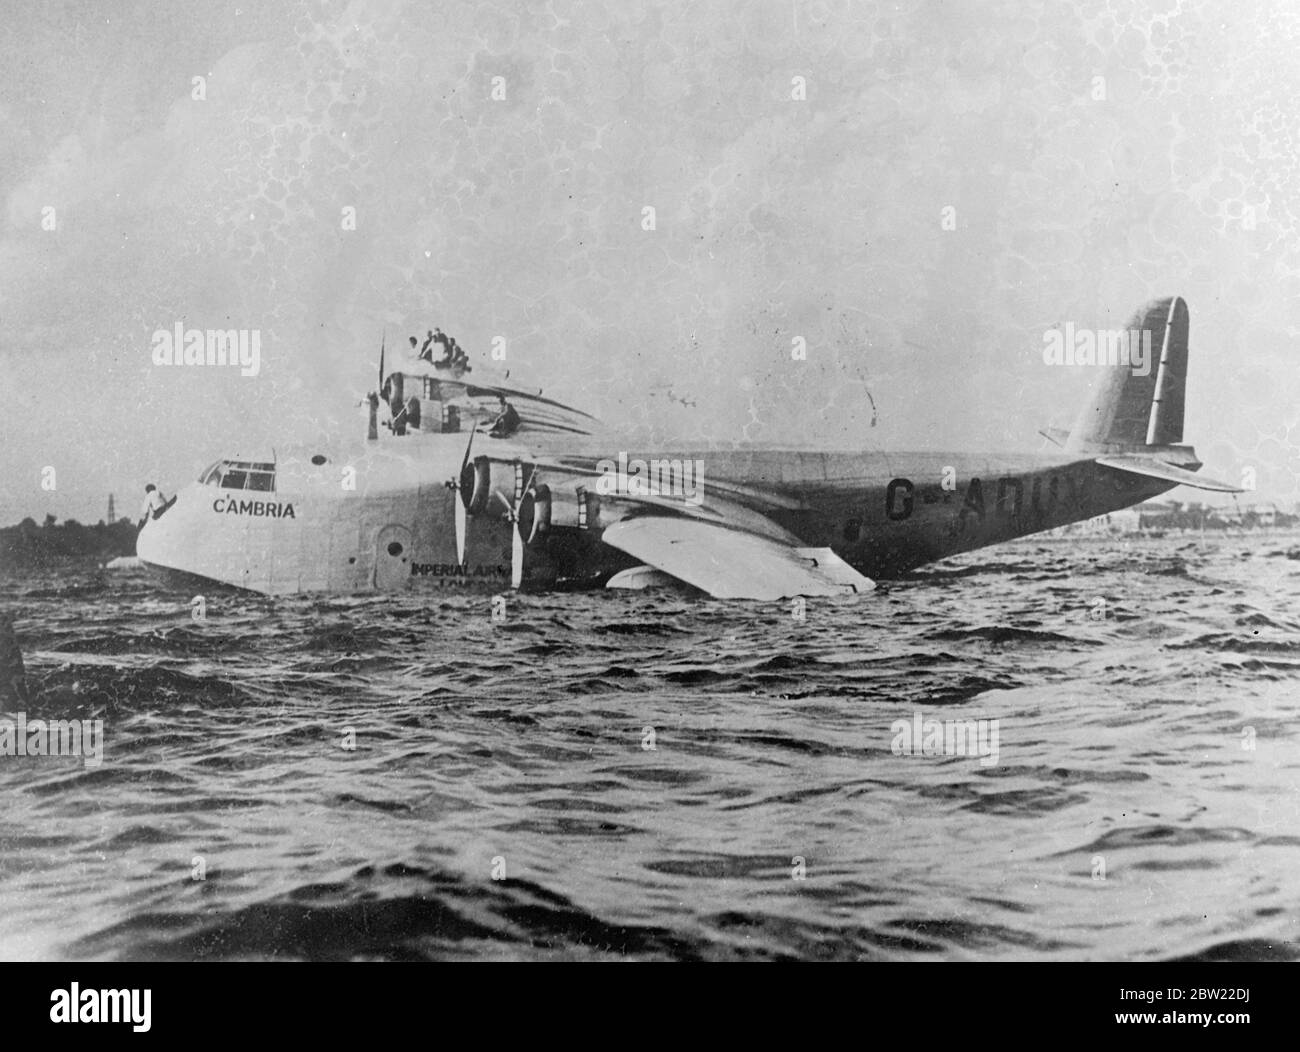 La Cambria s'est mise à l'essai comme membres de l'équipage pour l'équilibrer après le clash, lorsque l'avion a heurté un objet submergé lors de son atterrissage à Toronto, au Canada, après son dernier vol transatlantique. Le tout a été déchiré dans l'un des pontons, le bateau volant a été retenu pendant plusieurs jours pour des réparations. 13 septembre 1937. Banque D'Images